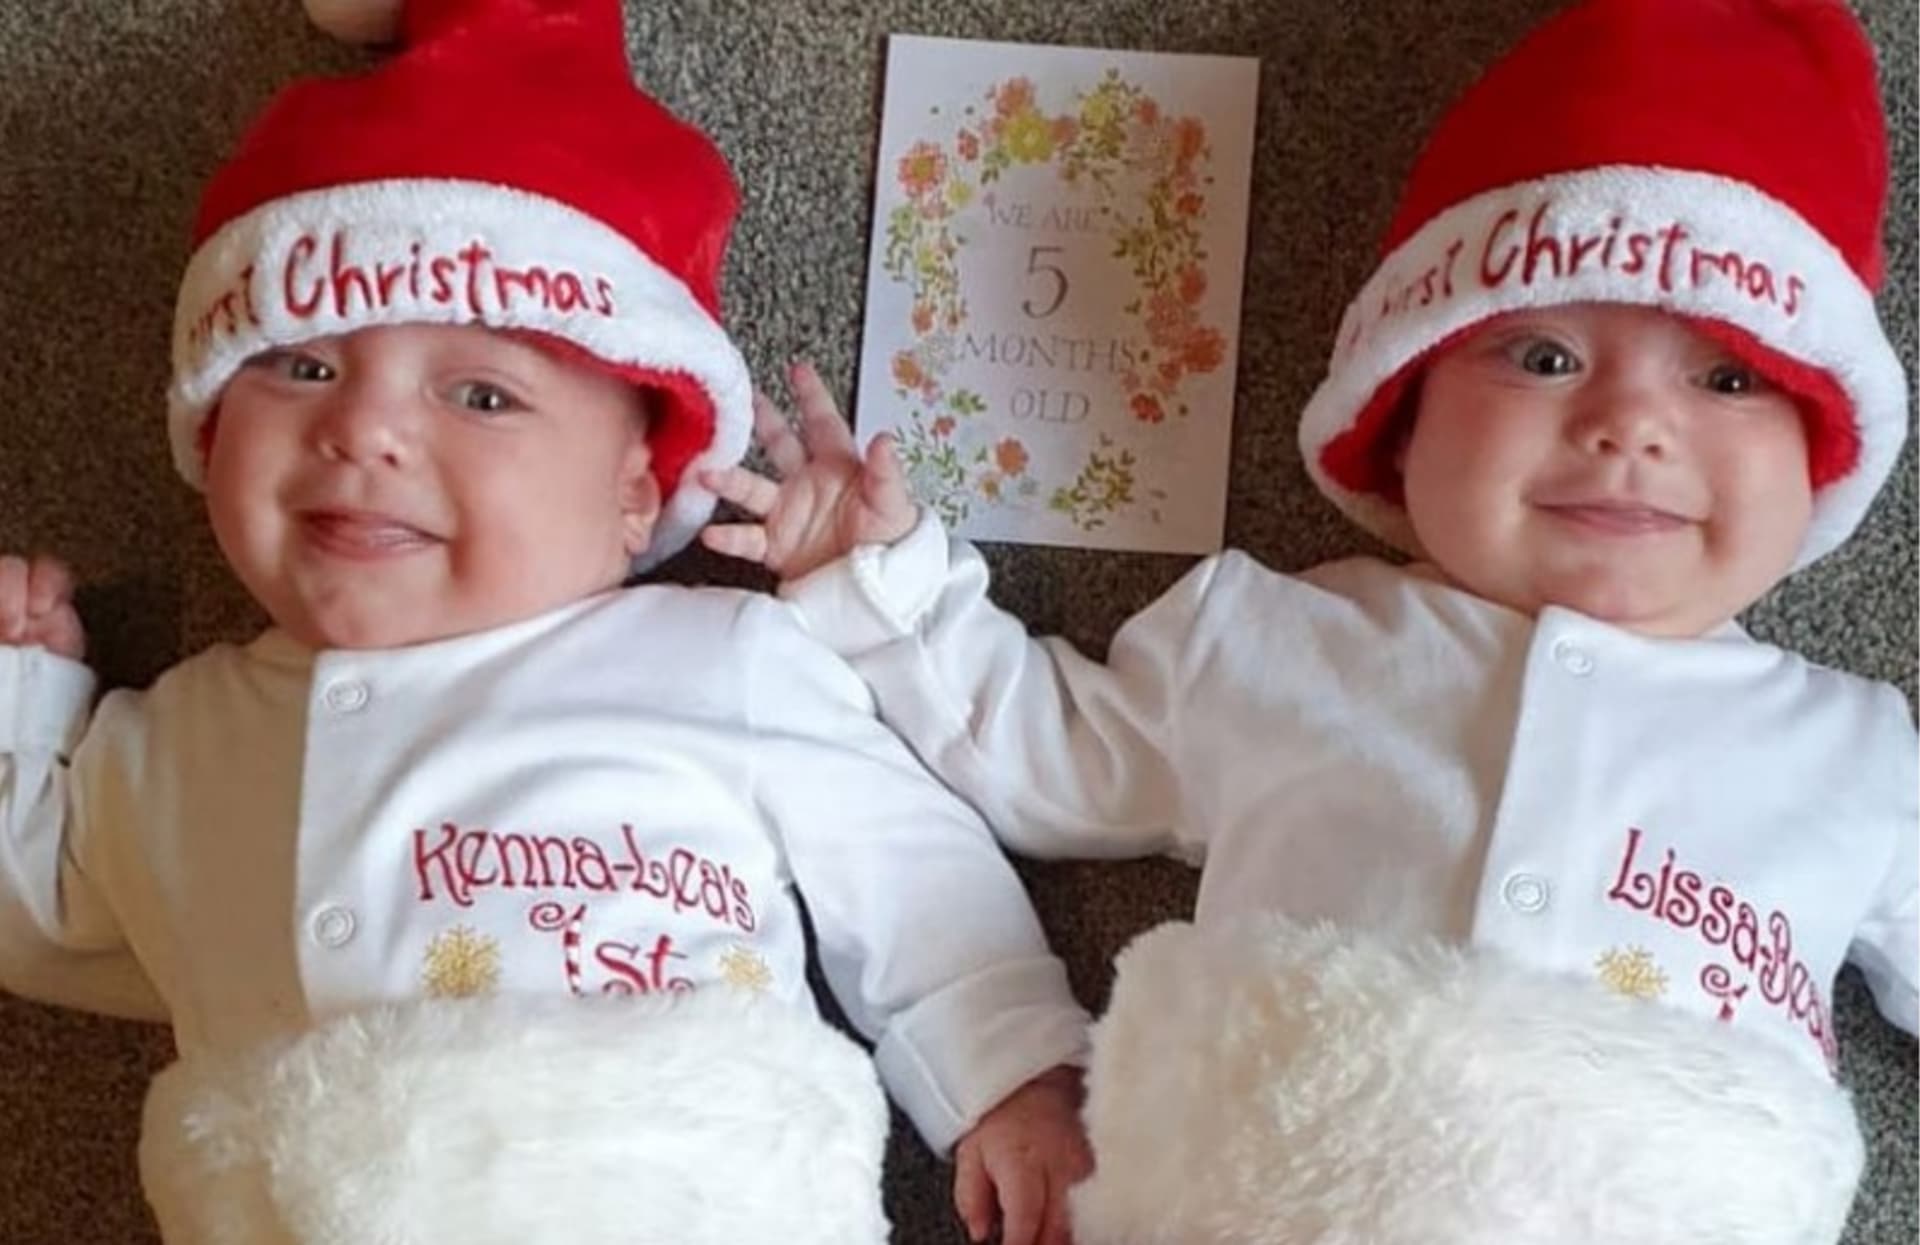 Dvojčata Kenna a Lissa, která měla koronavirus, odjela na Vánoce domů. 